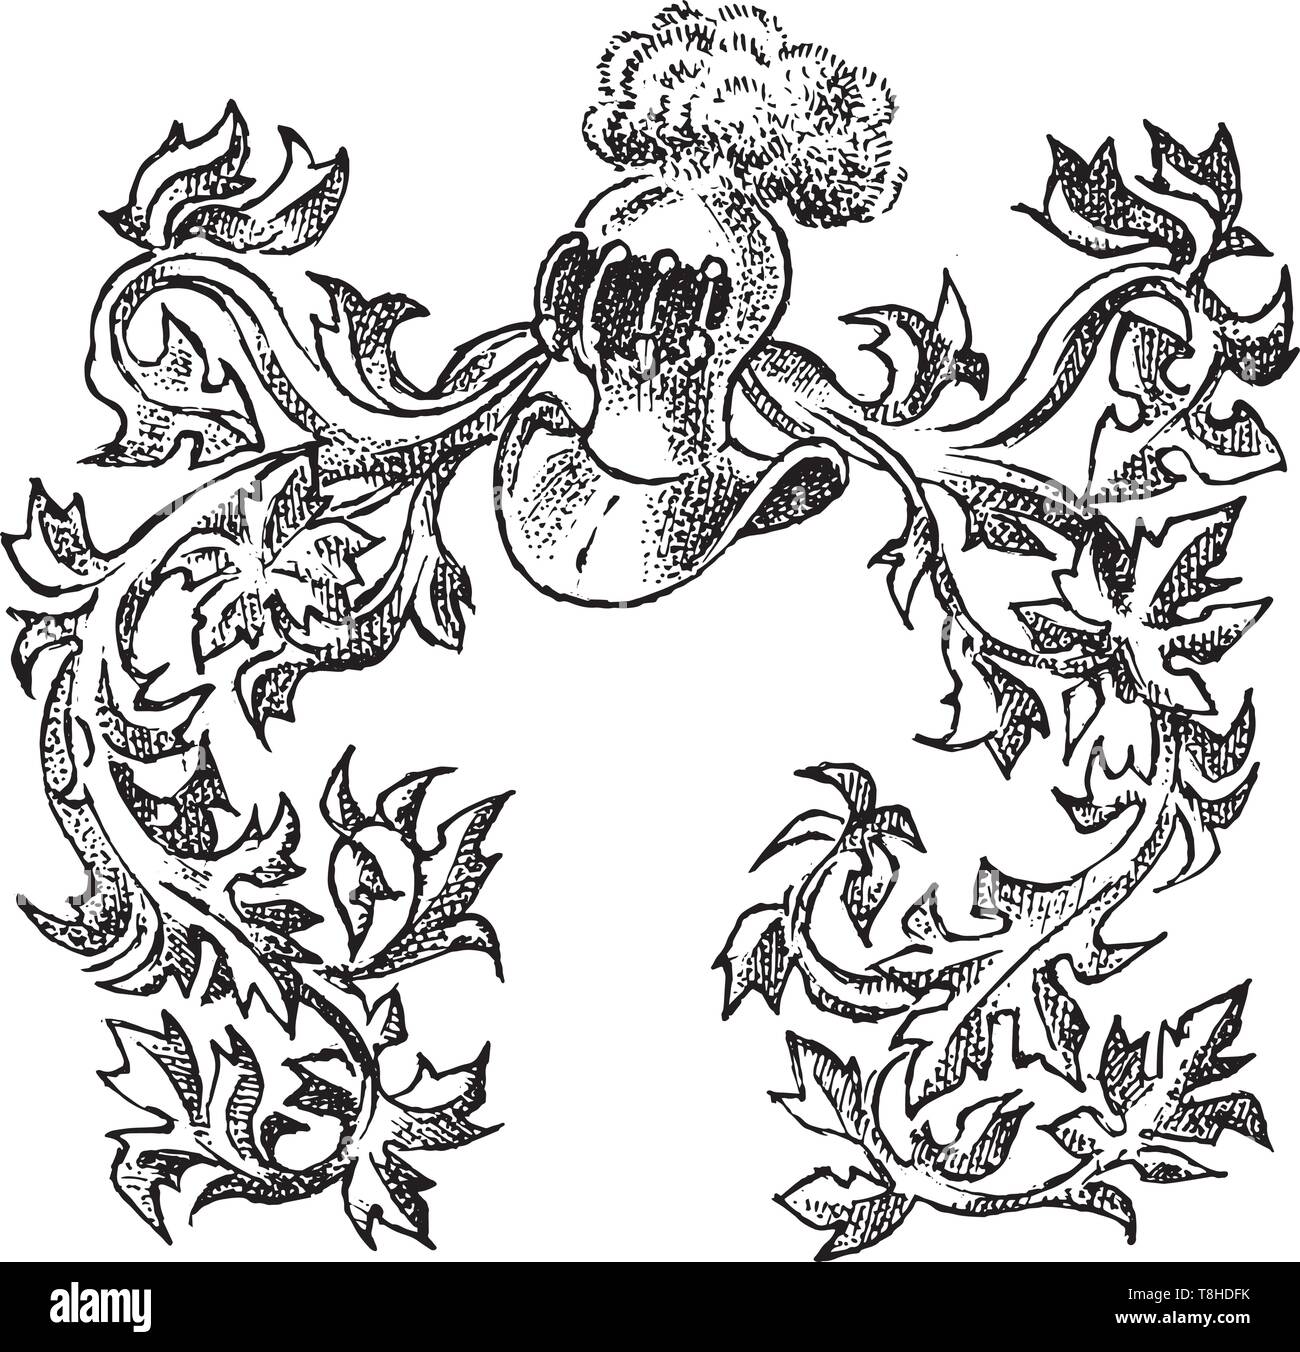 Éléments calligraphiques avec ornement de style baroque. Vintage médiévale héraldique. Décoration florissante pour les armoiries d'un royaume de fantaisie Illustration de Vecteur